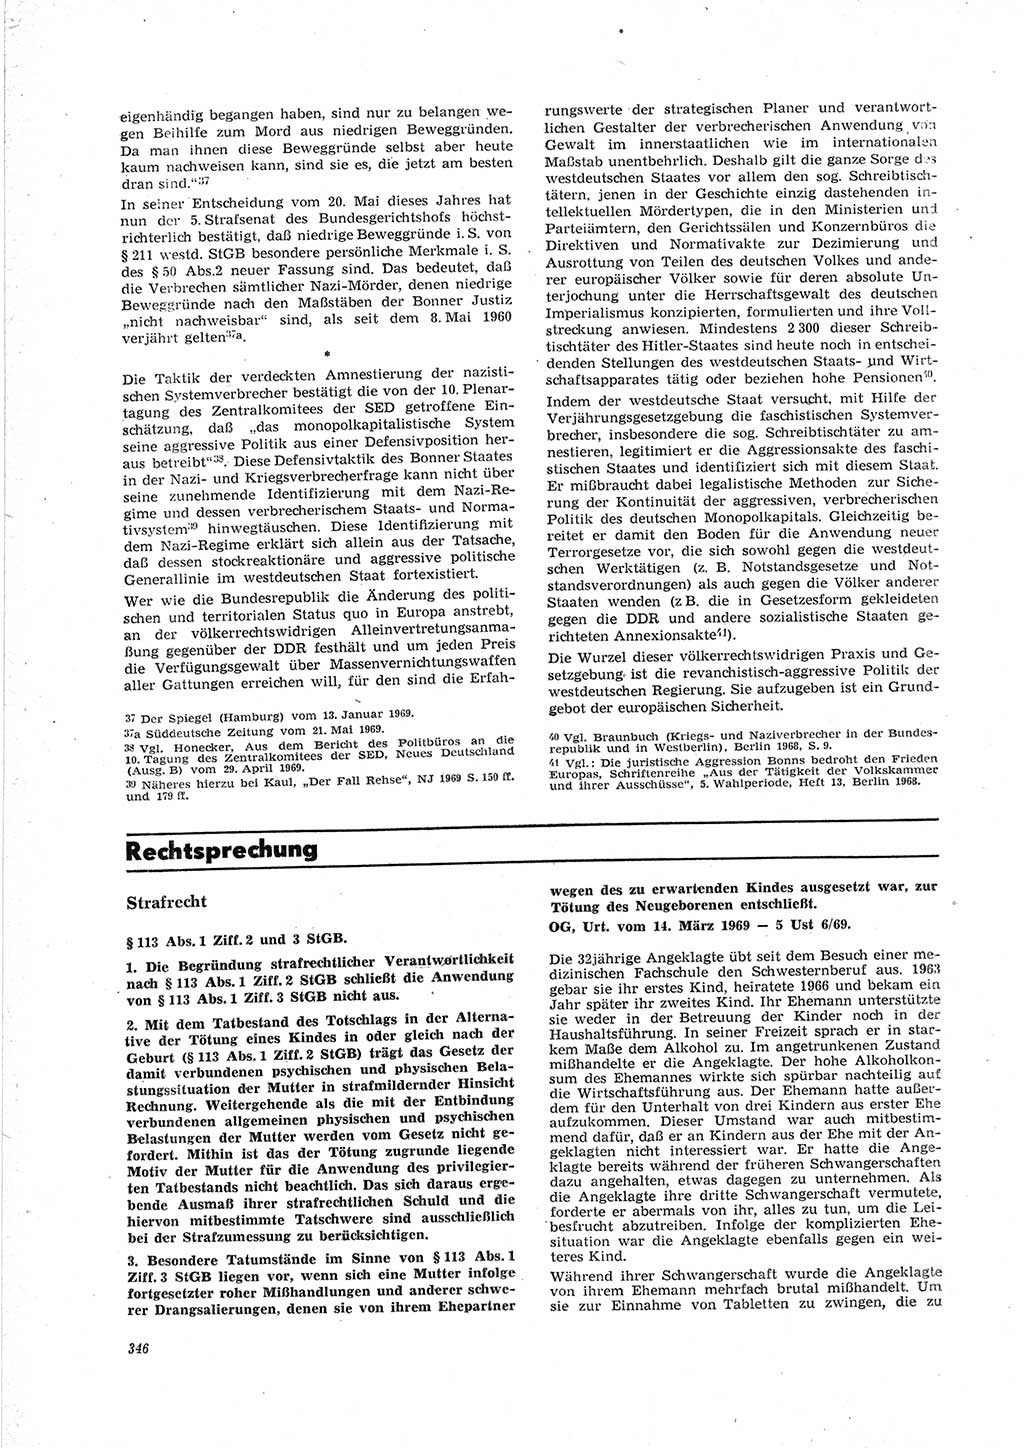 Neue Justiz (NJ), Zeitschrift für Recht und Rechtswissenschaft [Deutsche Demokratische Republik (DDR)], 23. Jahrgang 1969, Seite 346 (NJ DDR 1969, S. 346)